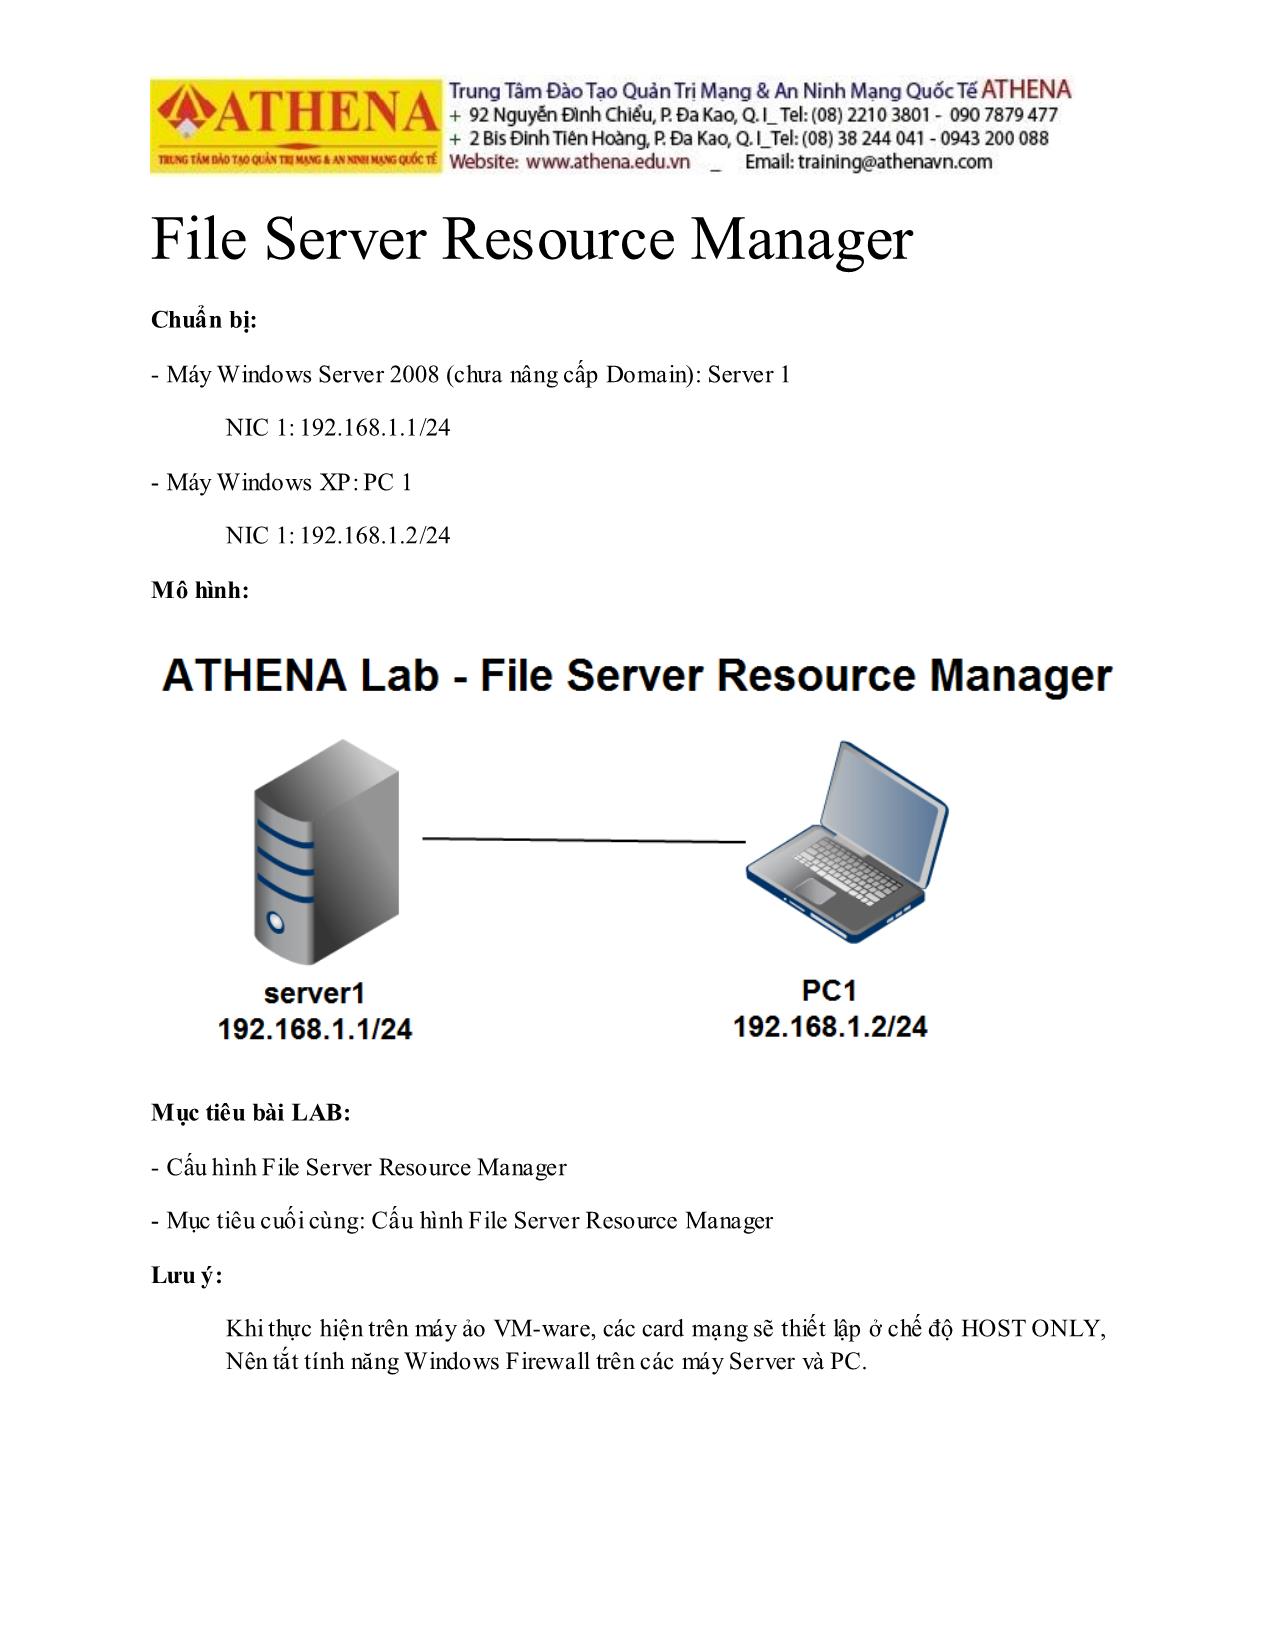 Tài liệu Hướng dẫn thực hành quản trị mạng - File server resource manager trang 1